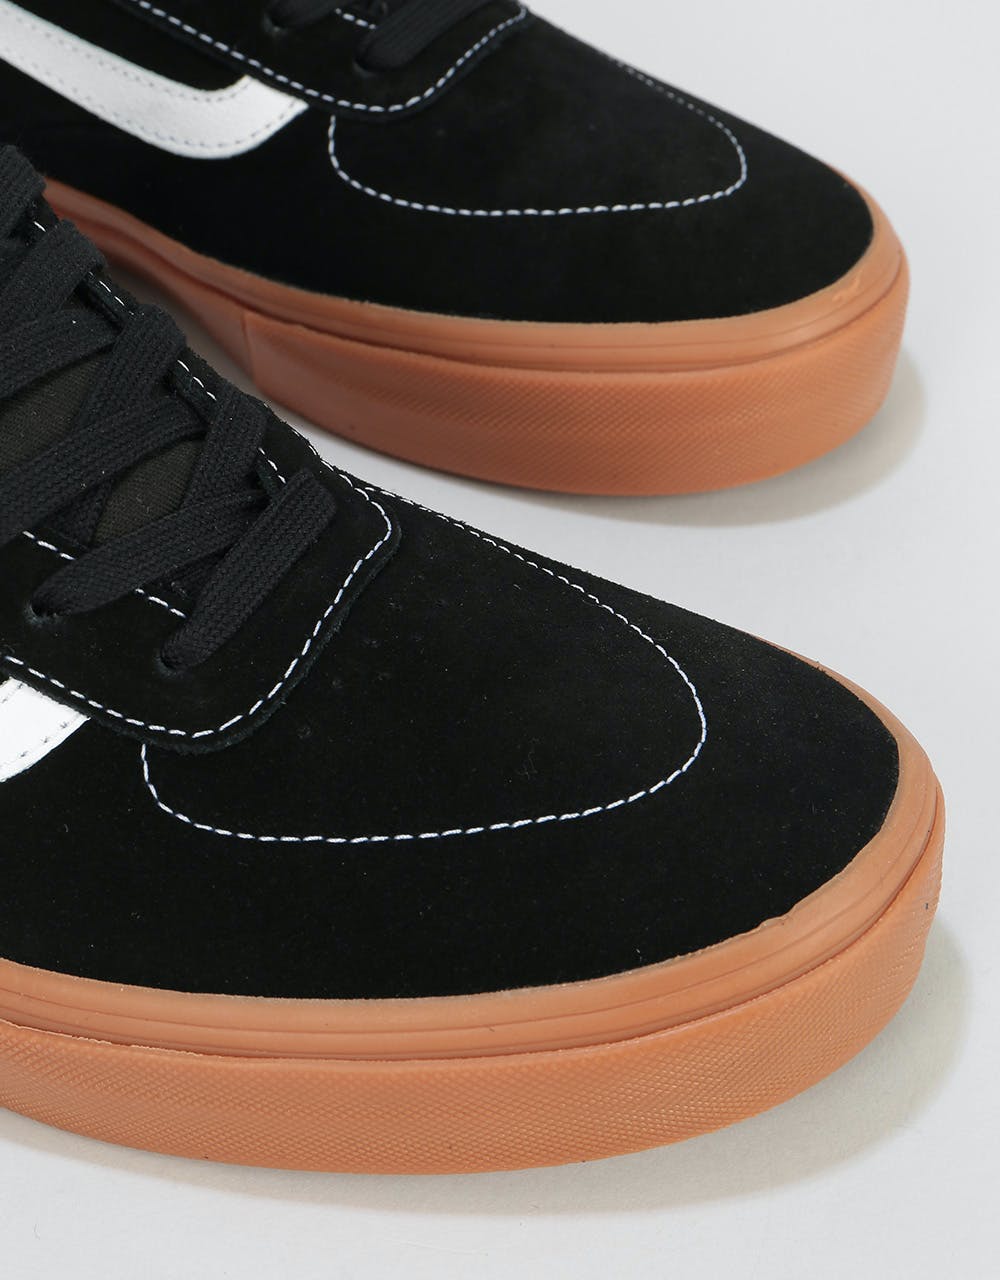 Vans Kyle Walker Pro Skate Shoes - Black/Gum